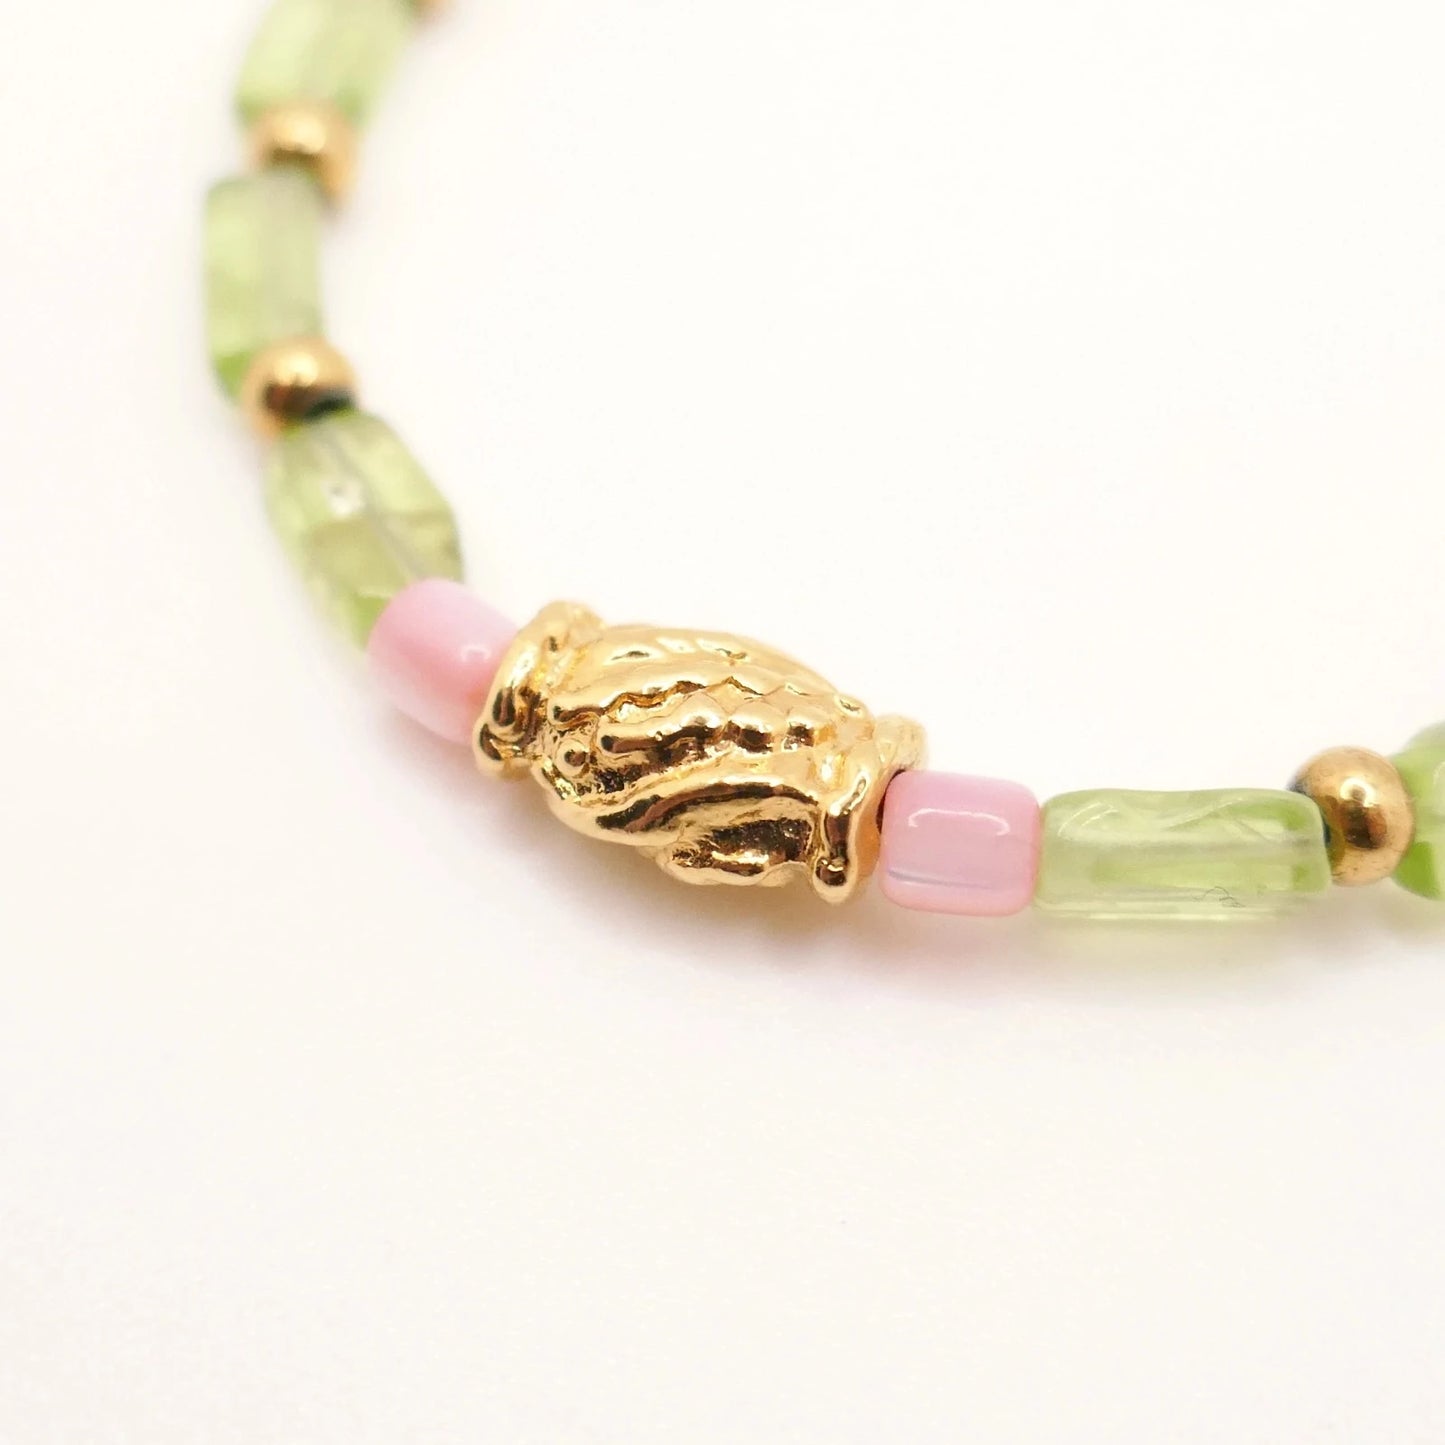 Bracelet pour femme en pierres Péridot d'Egypte vert, petits cubes roses et perles baroques dorées à l'or fin